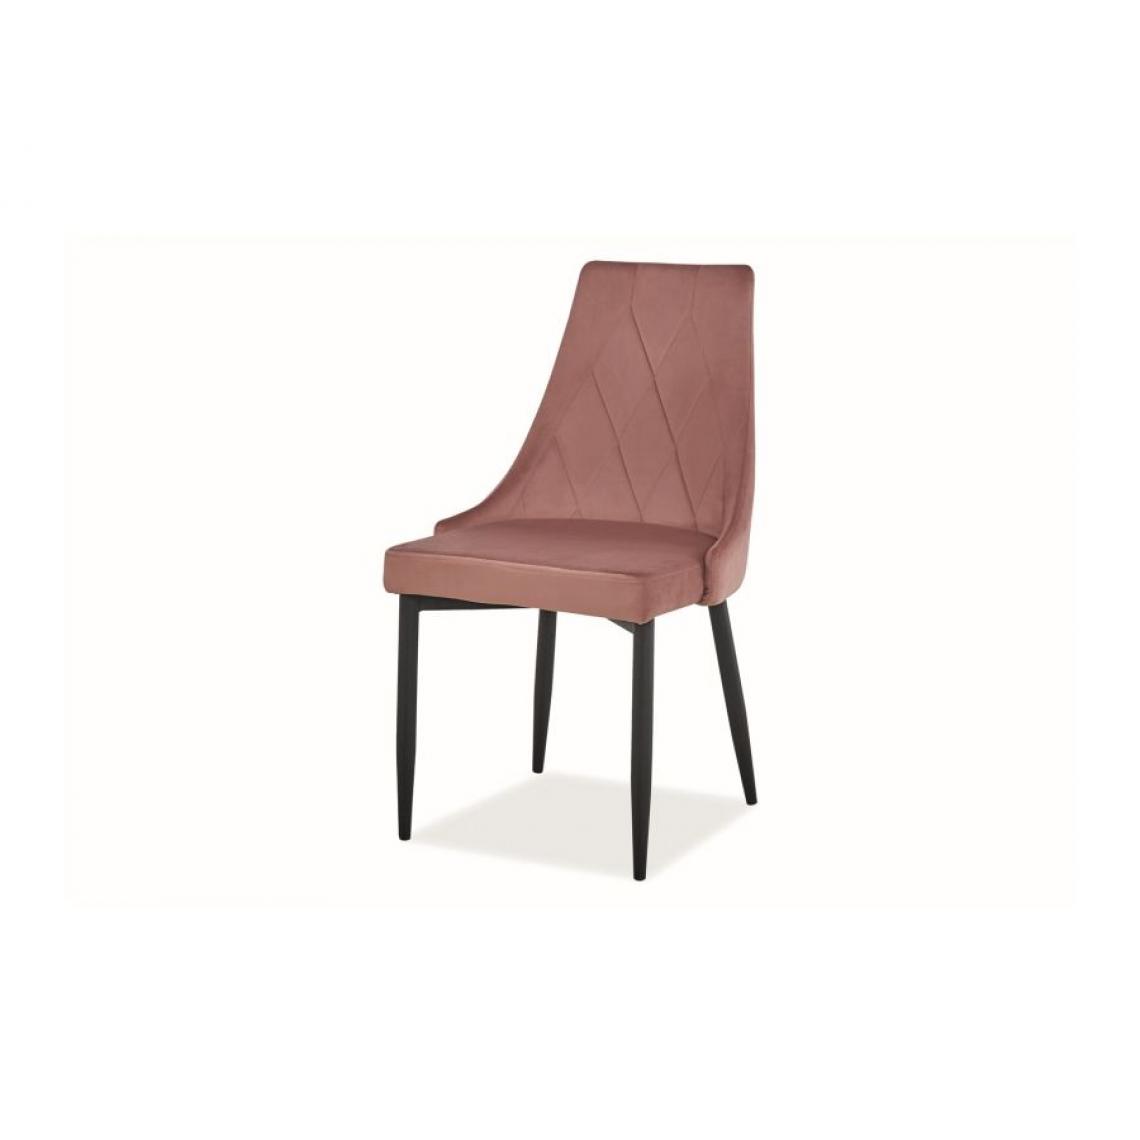 Hucoco - TRIY | Chaise élégante pour le salon et la salle à manger | 88x46x46 cm | Rembourrée en tissu velours | Pieds en métal - Rose - Chaises